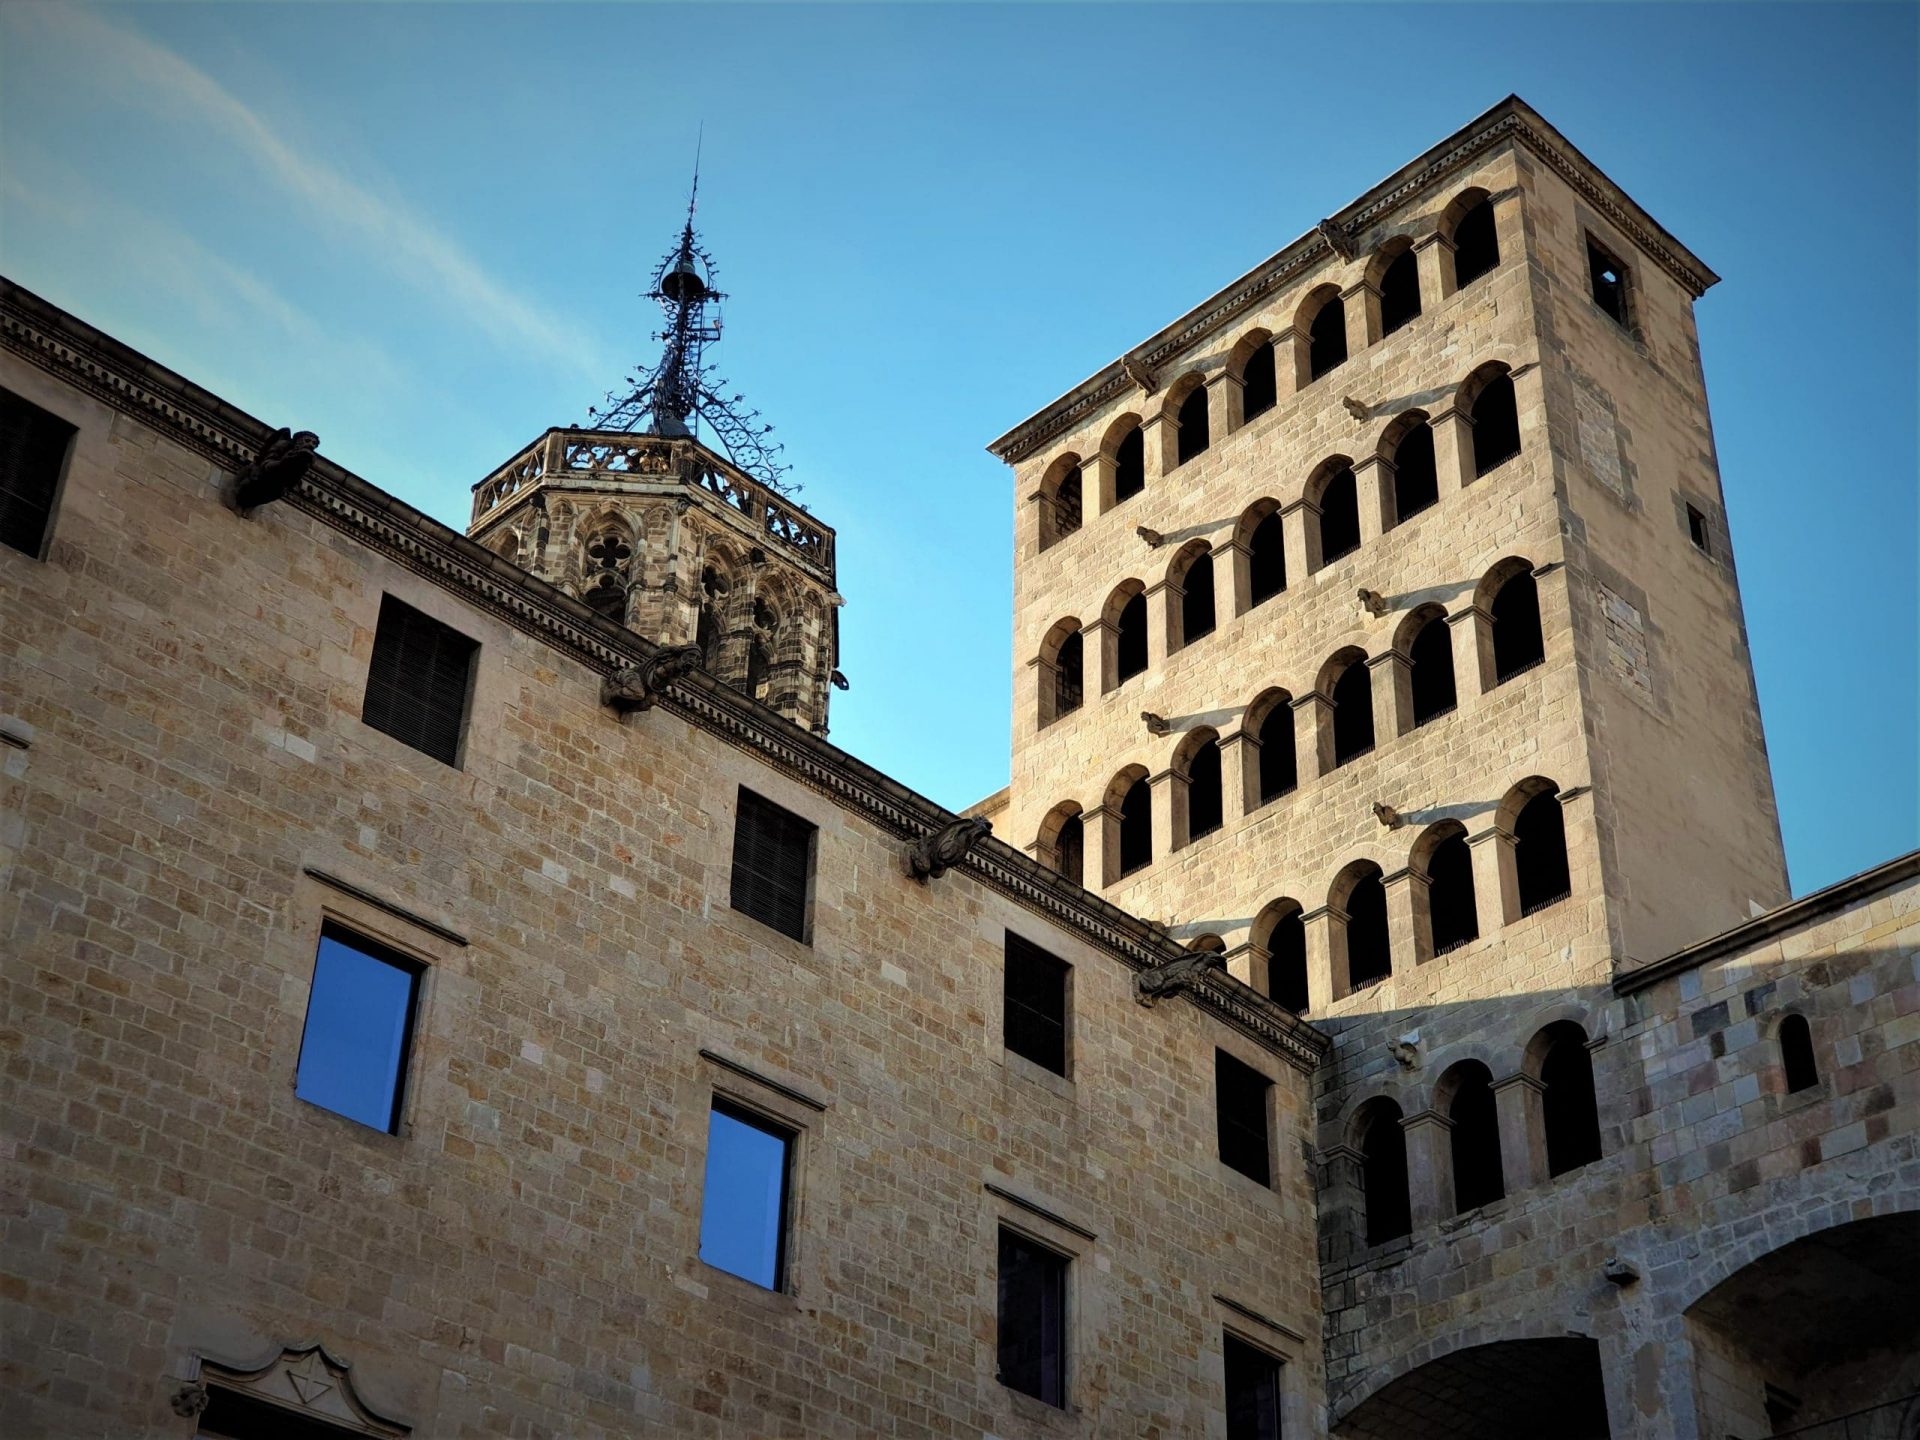 Plaça del Rei nel Quartiere Gotico, Barcellona medievale.